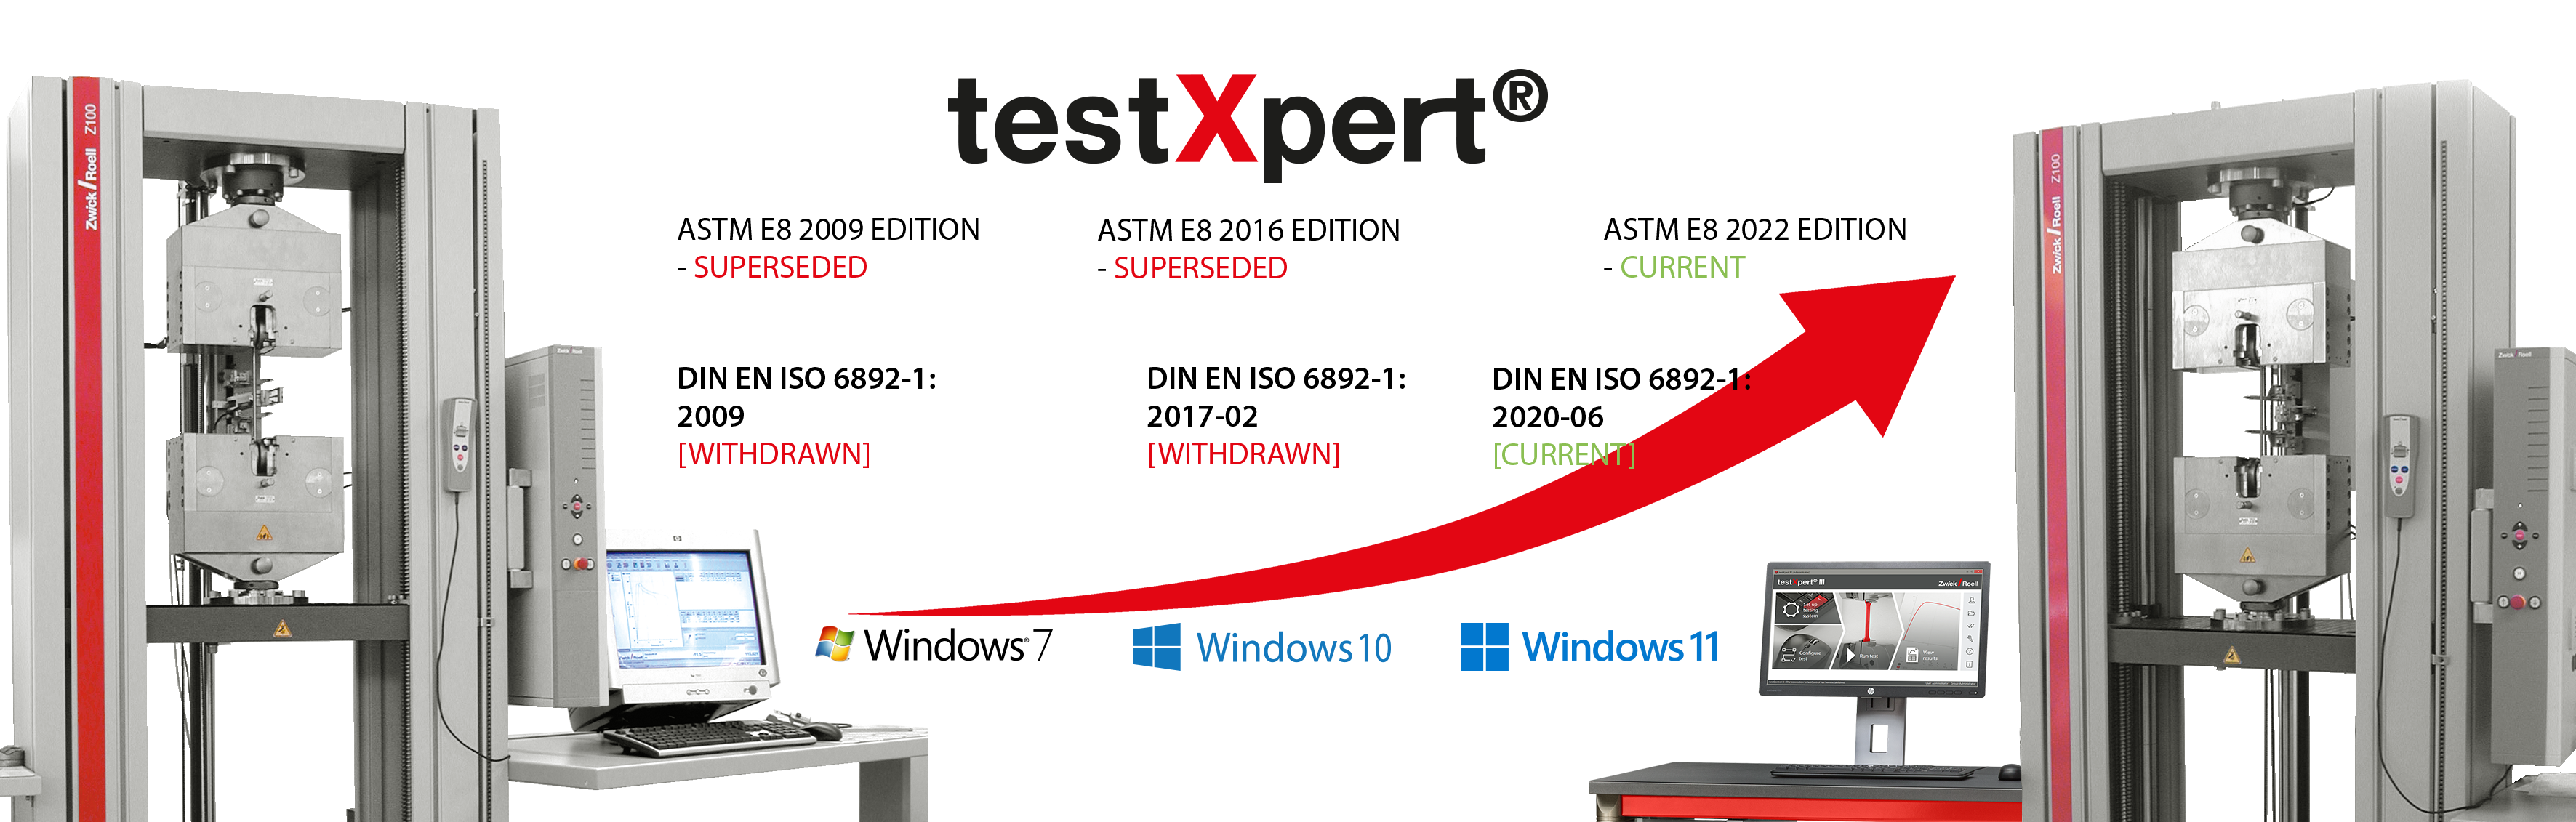 testXpert évolue avec vous, que vous changiez de norme ou introduisiez un nouveau système d’exploitation